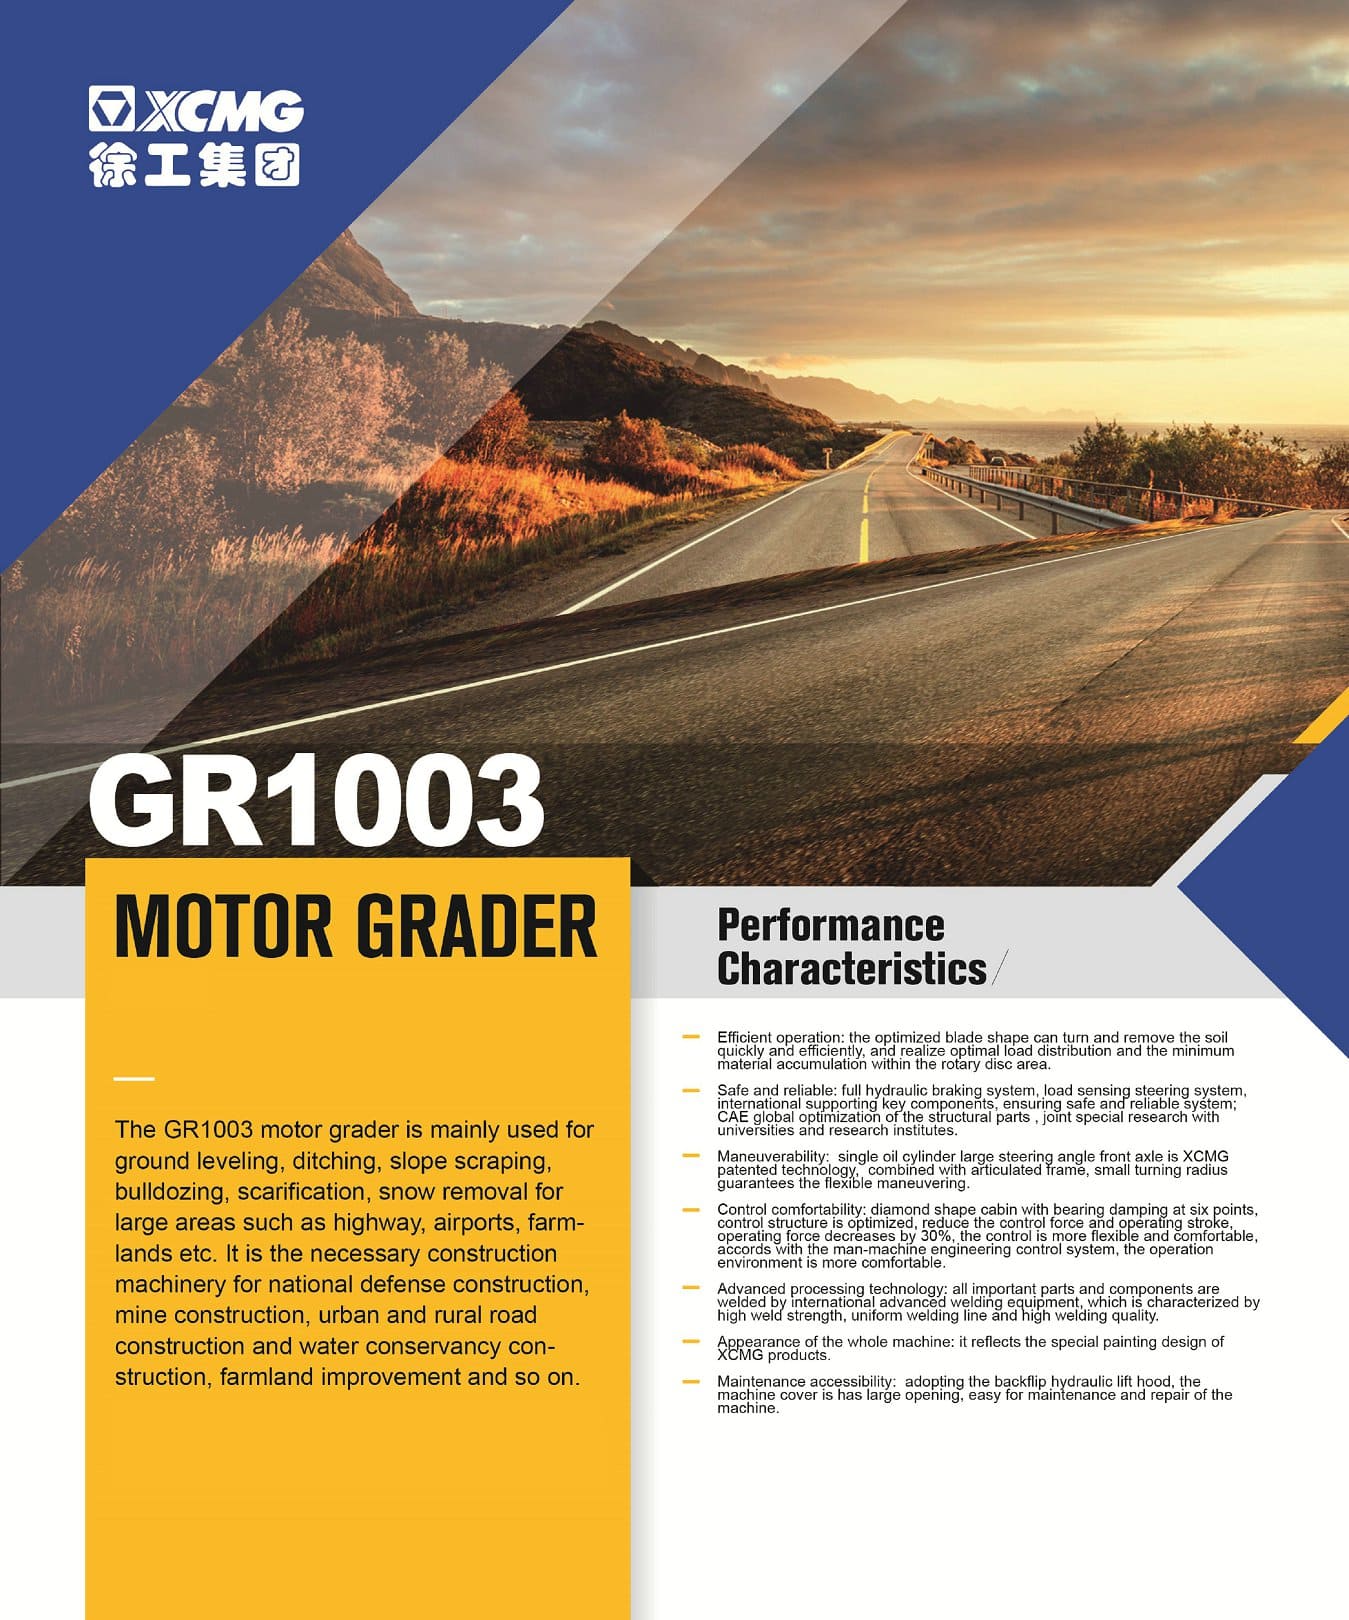 XCMG Official Motor Grader GR1003 For Sale